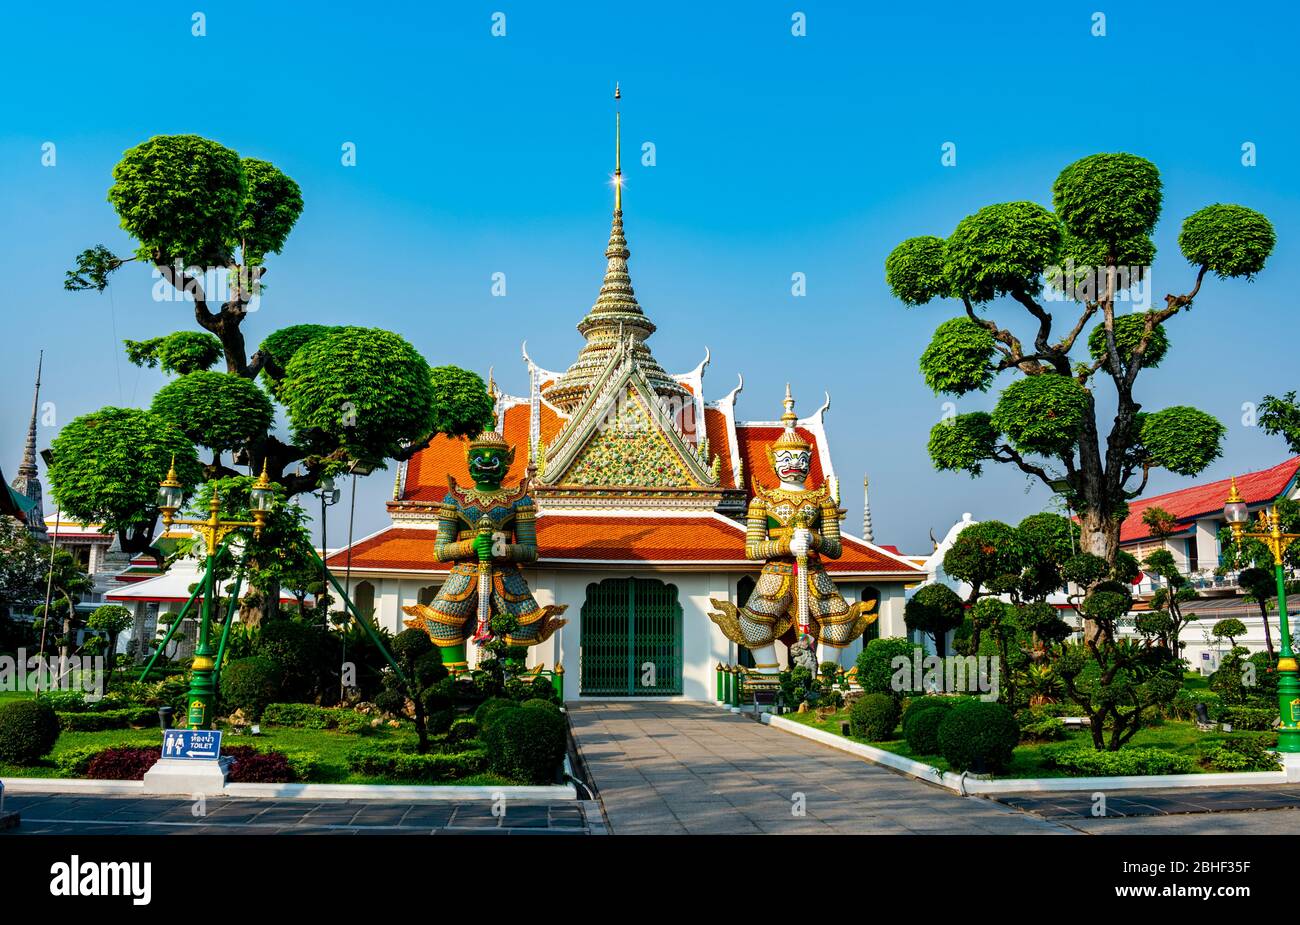 Thailandia, Bangkok - 12. januar 2019 - Wat Arun, Eingang zur Ordinationshalle Stockfoto